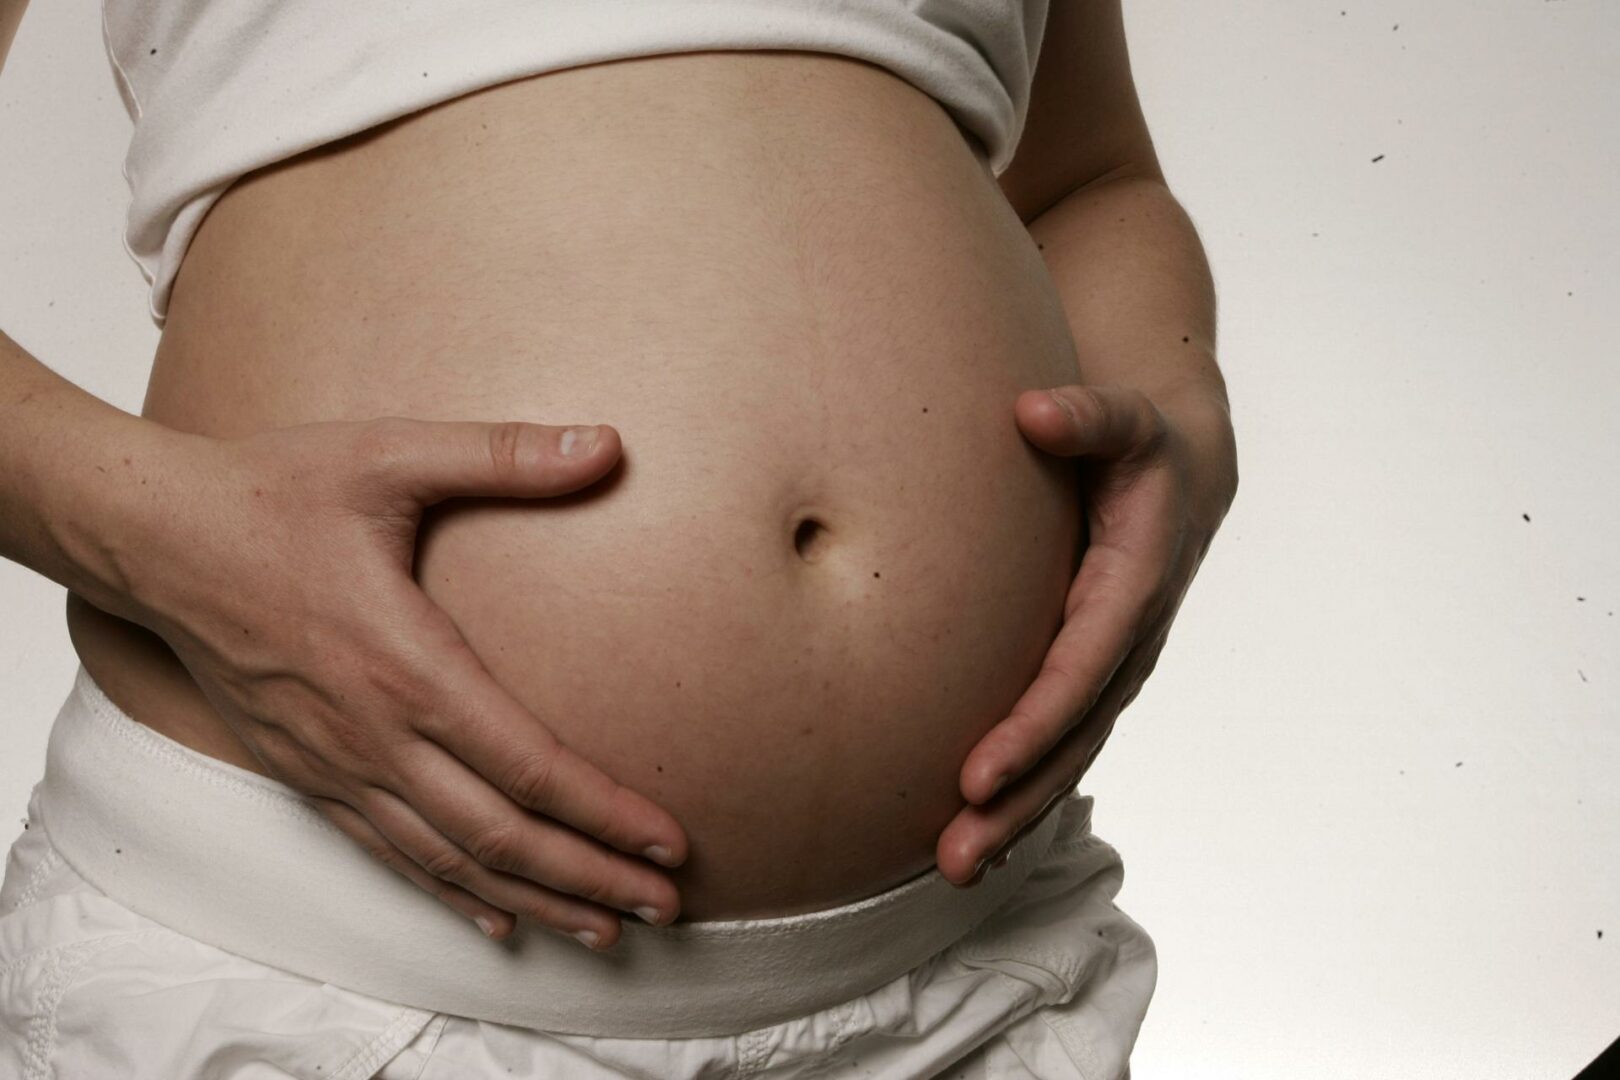 La Corte Suprema de Texas anula el fallo que permitía abortar a mujer por razones médicas